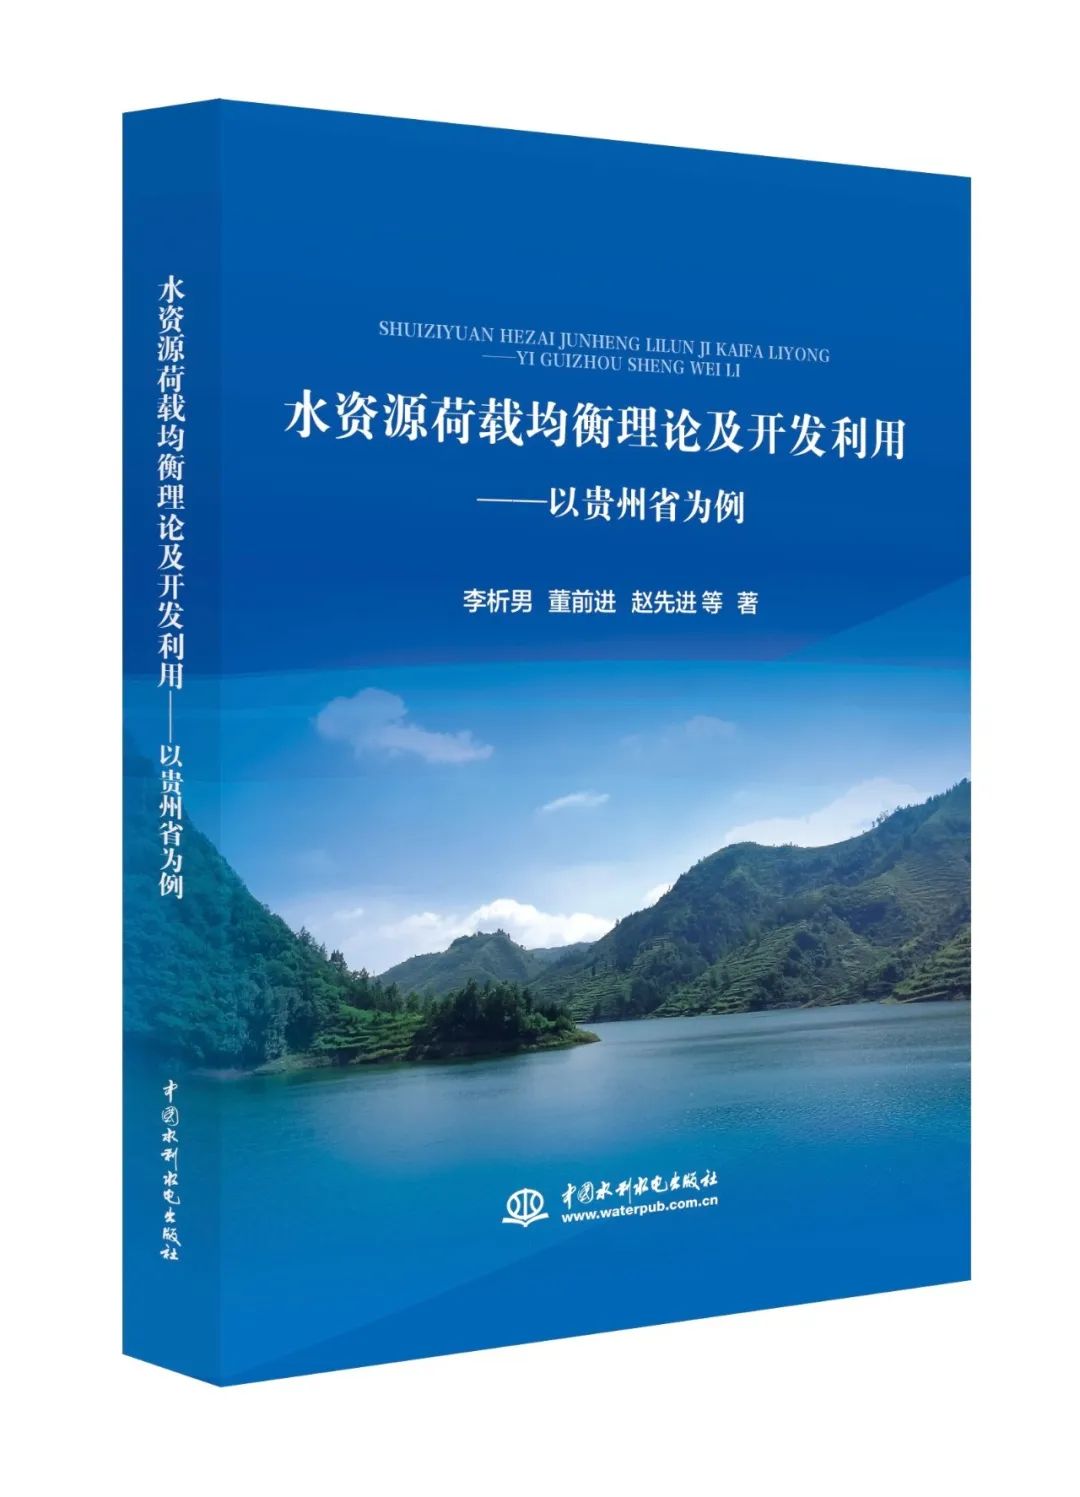 新书推荐 | 水资源荷载均衡理论及开发利用——以贵州省为例